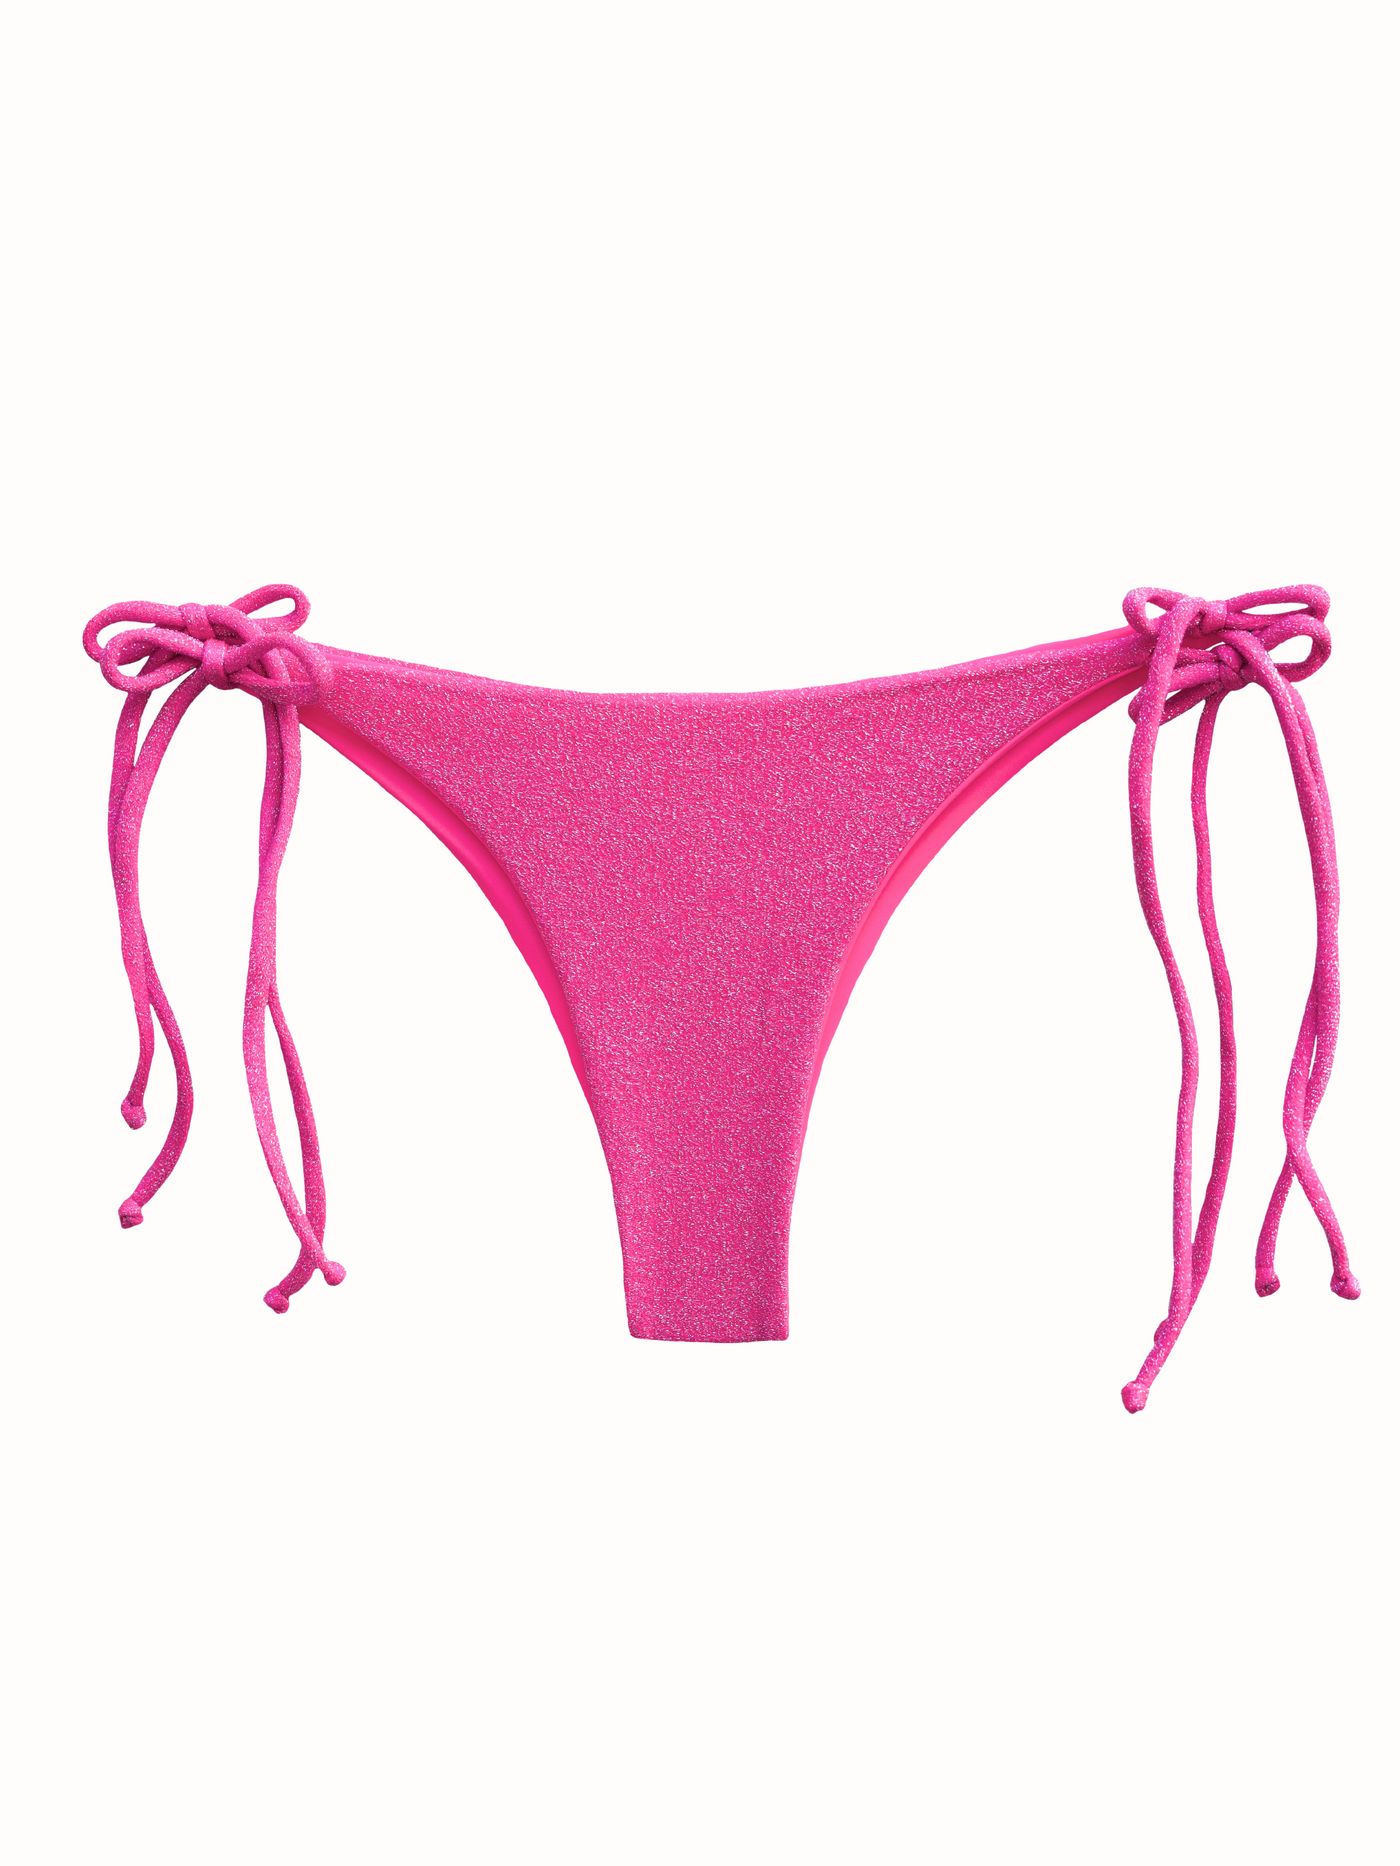 JAE Bikini Bottom in Pink Shimmer